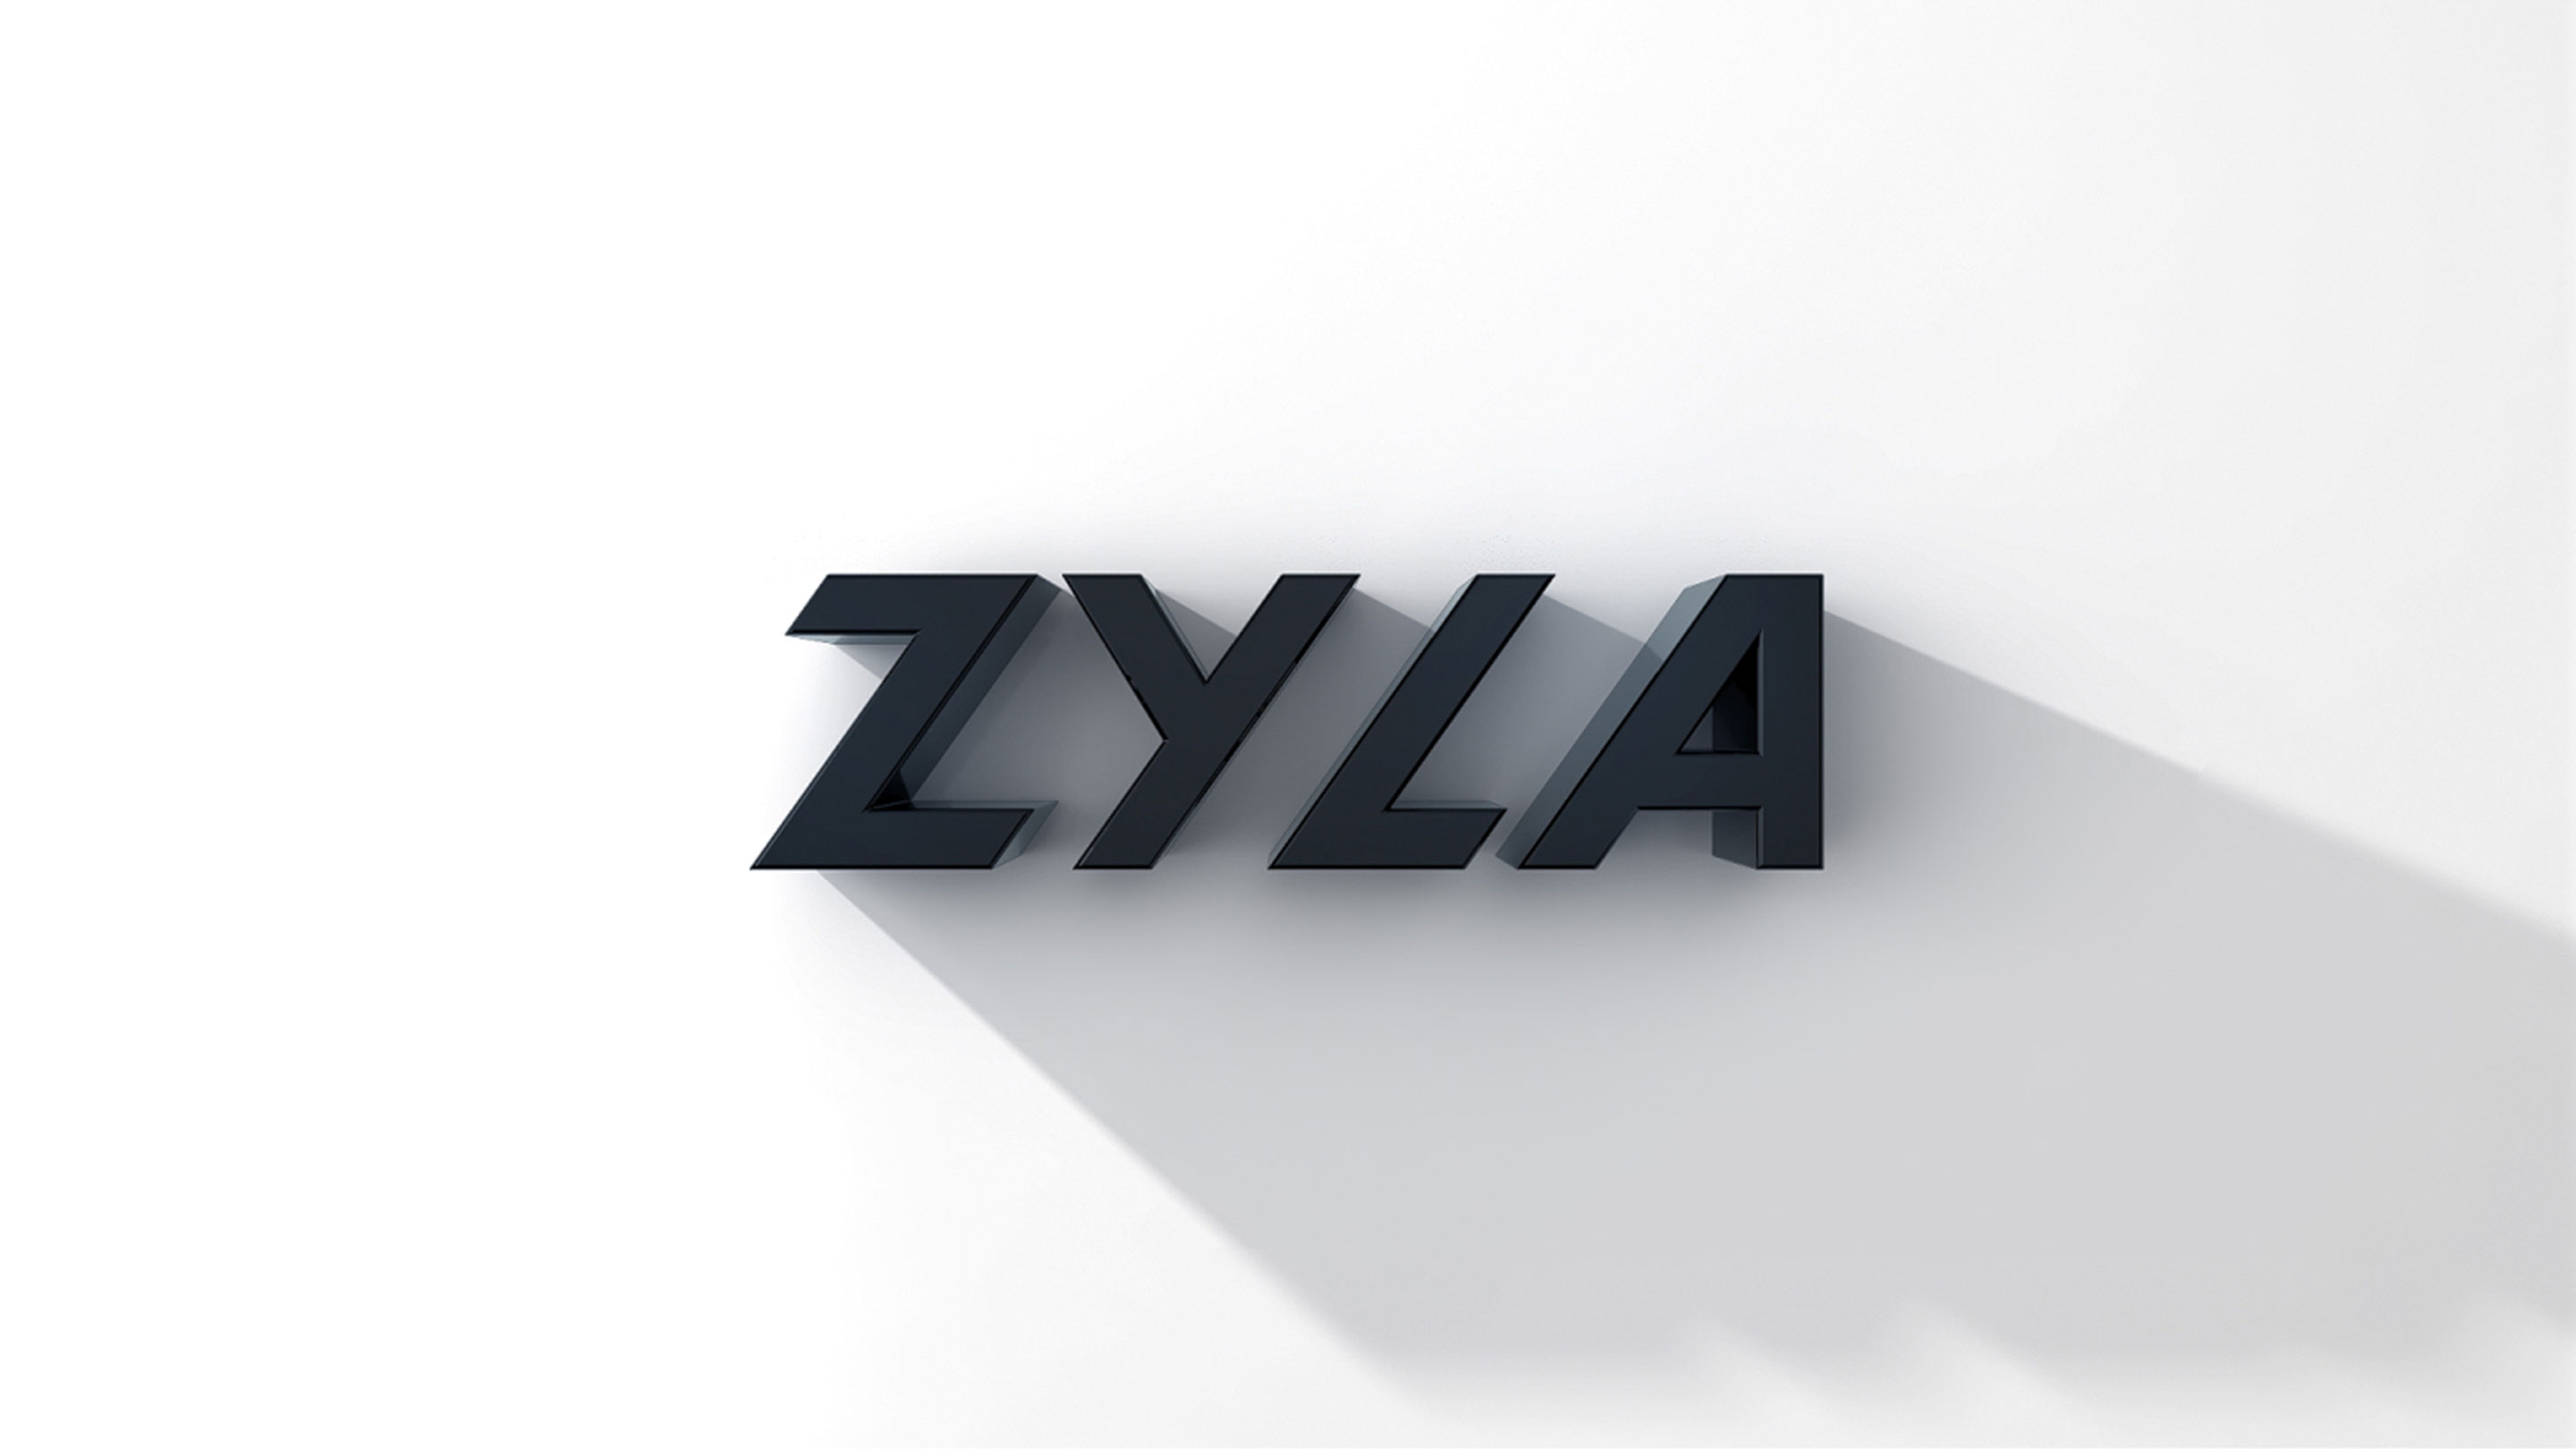 ZYLA CGI Identity